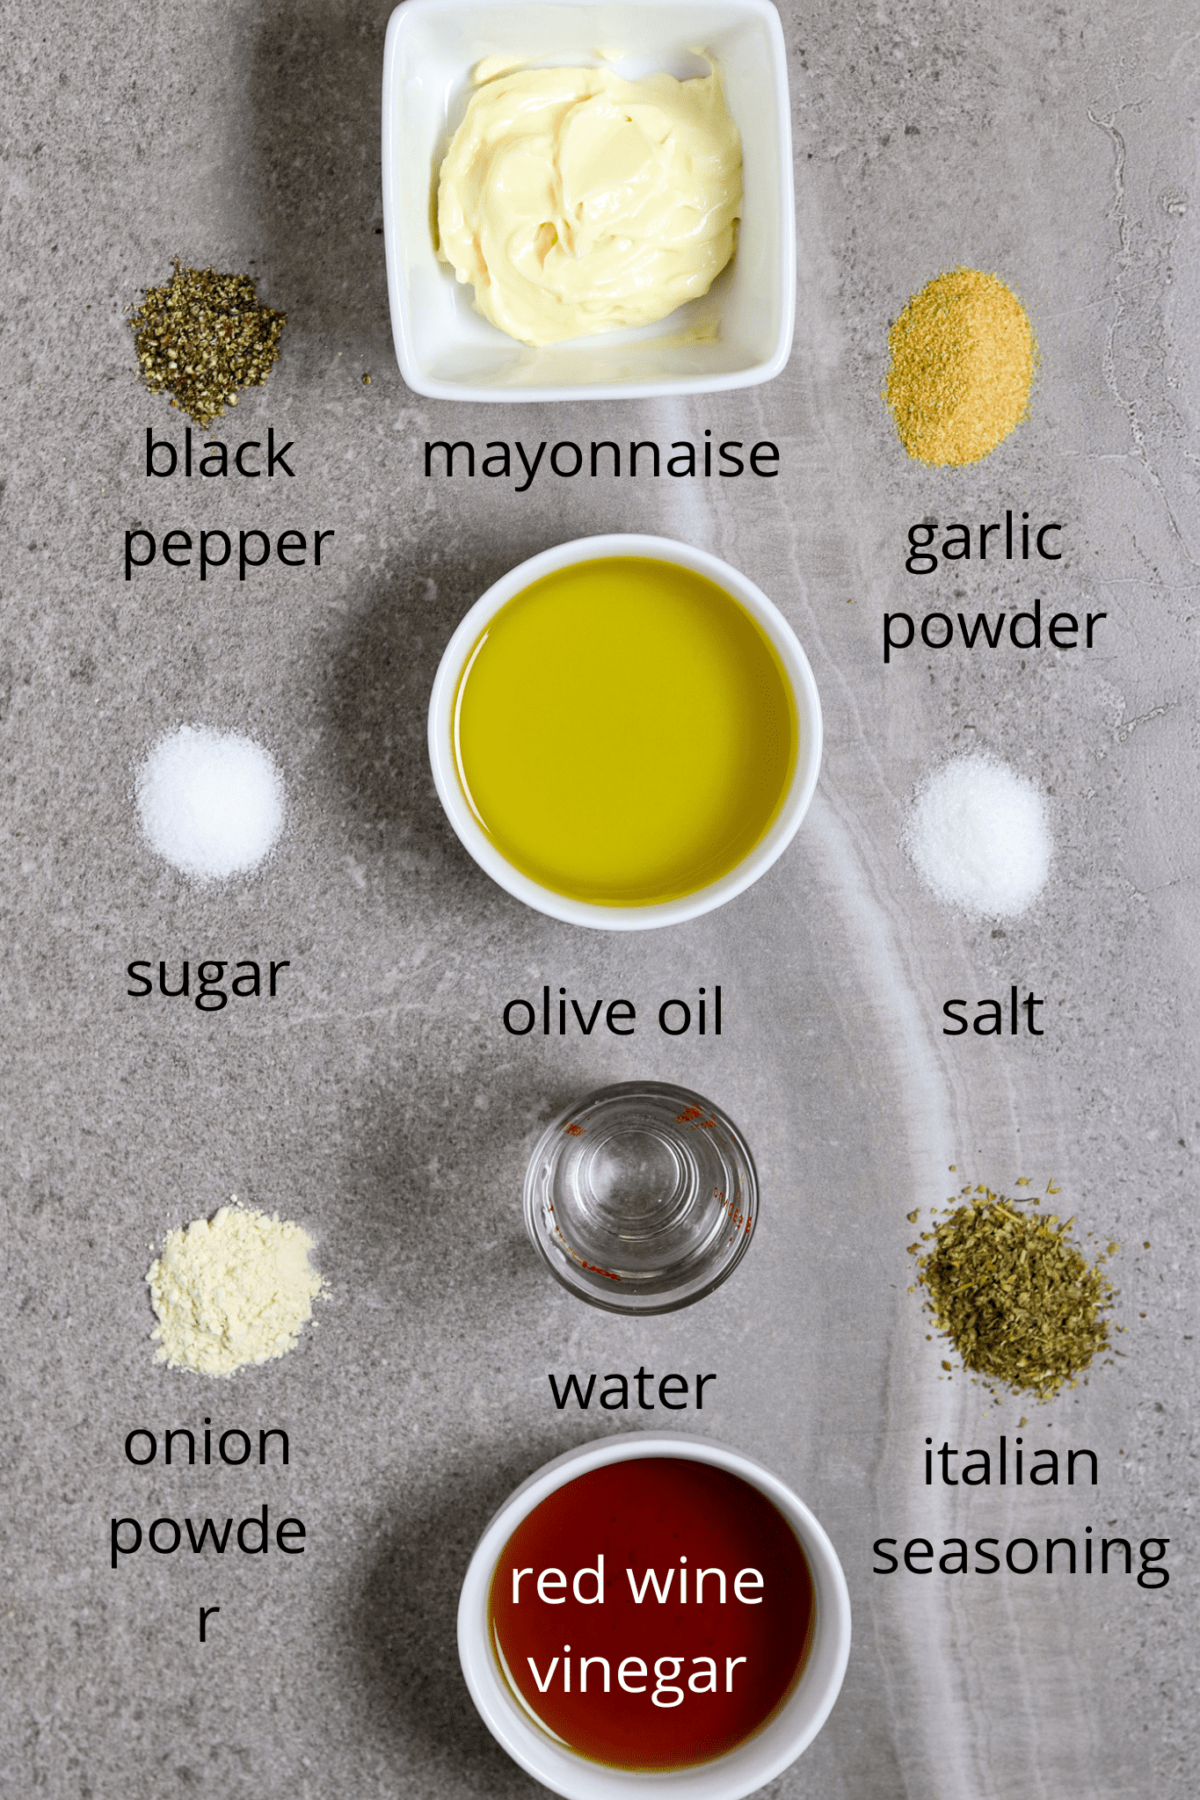 Ingredients of seasonings, olive oil, mayonnaise, and vinegar.